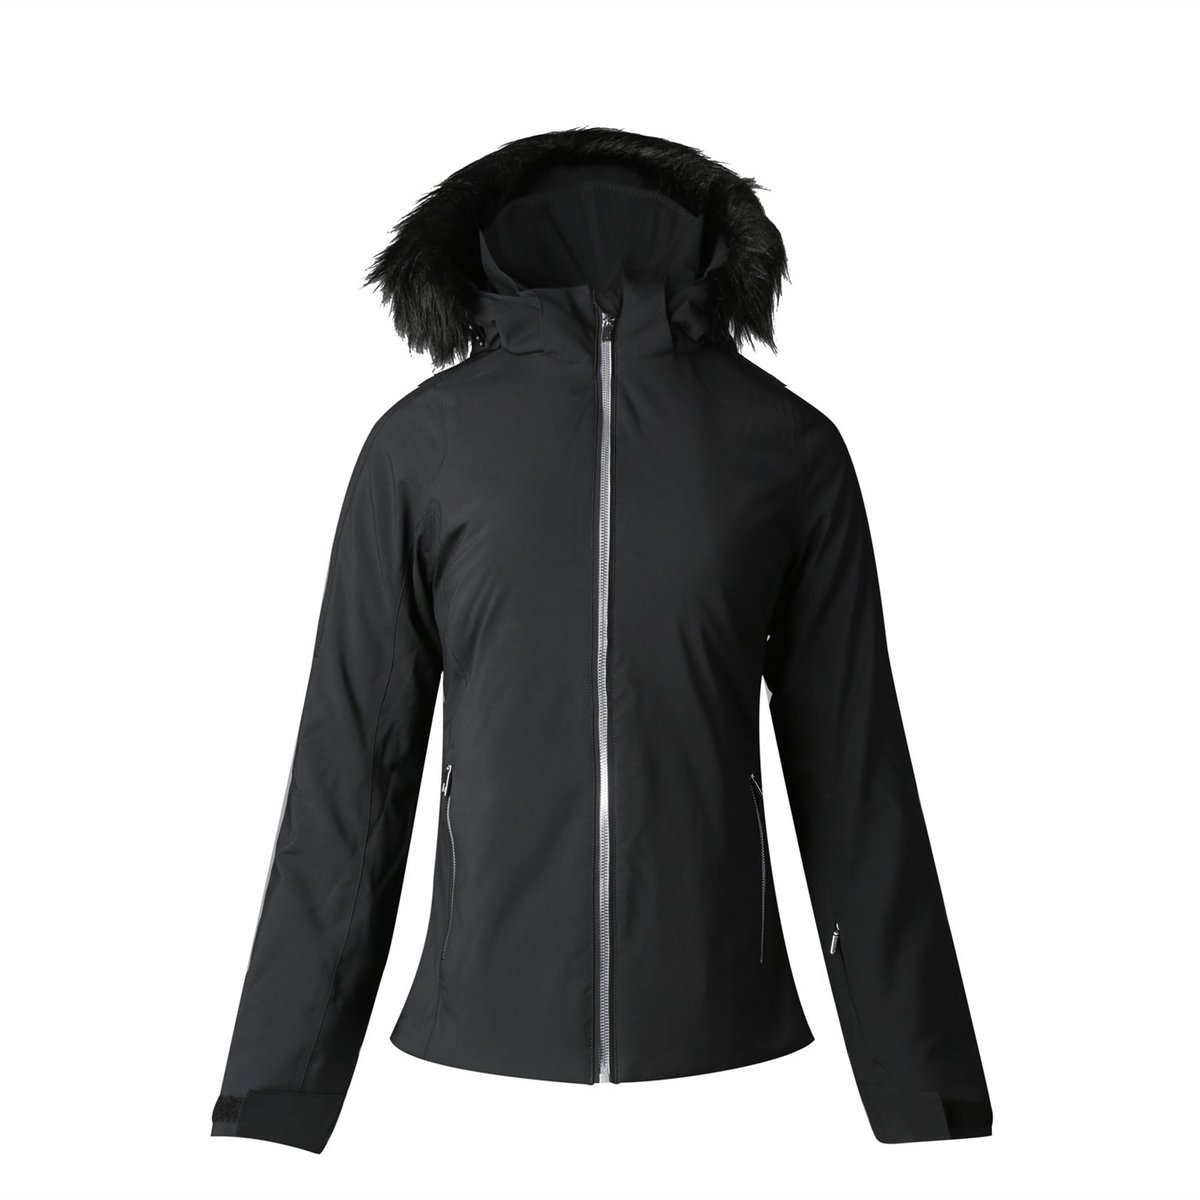 Nevica Banff Ski Jacket Black, £60.00